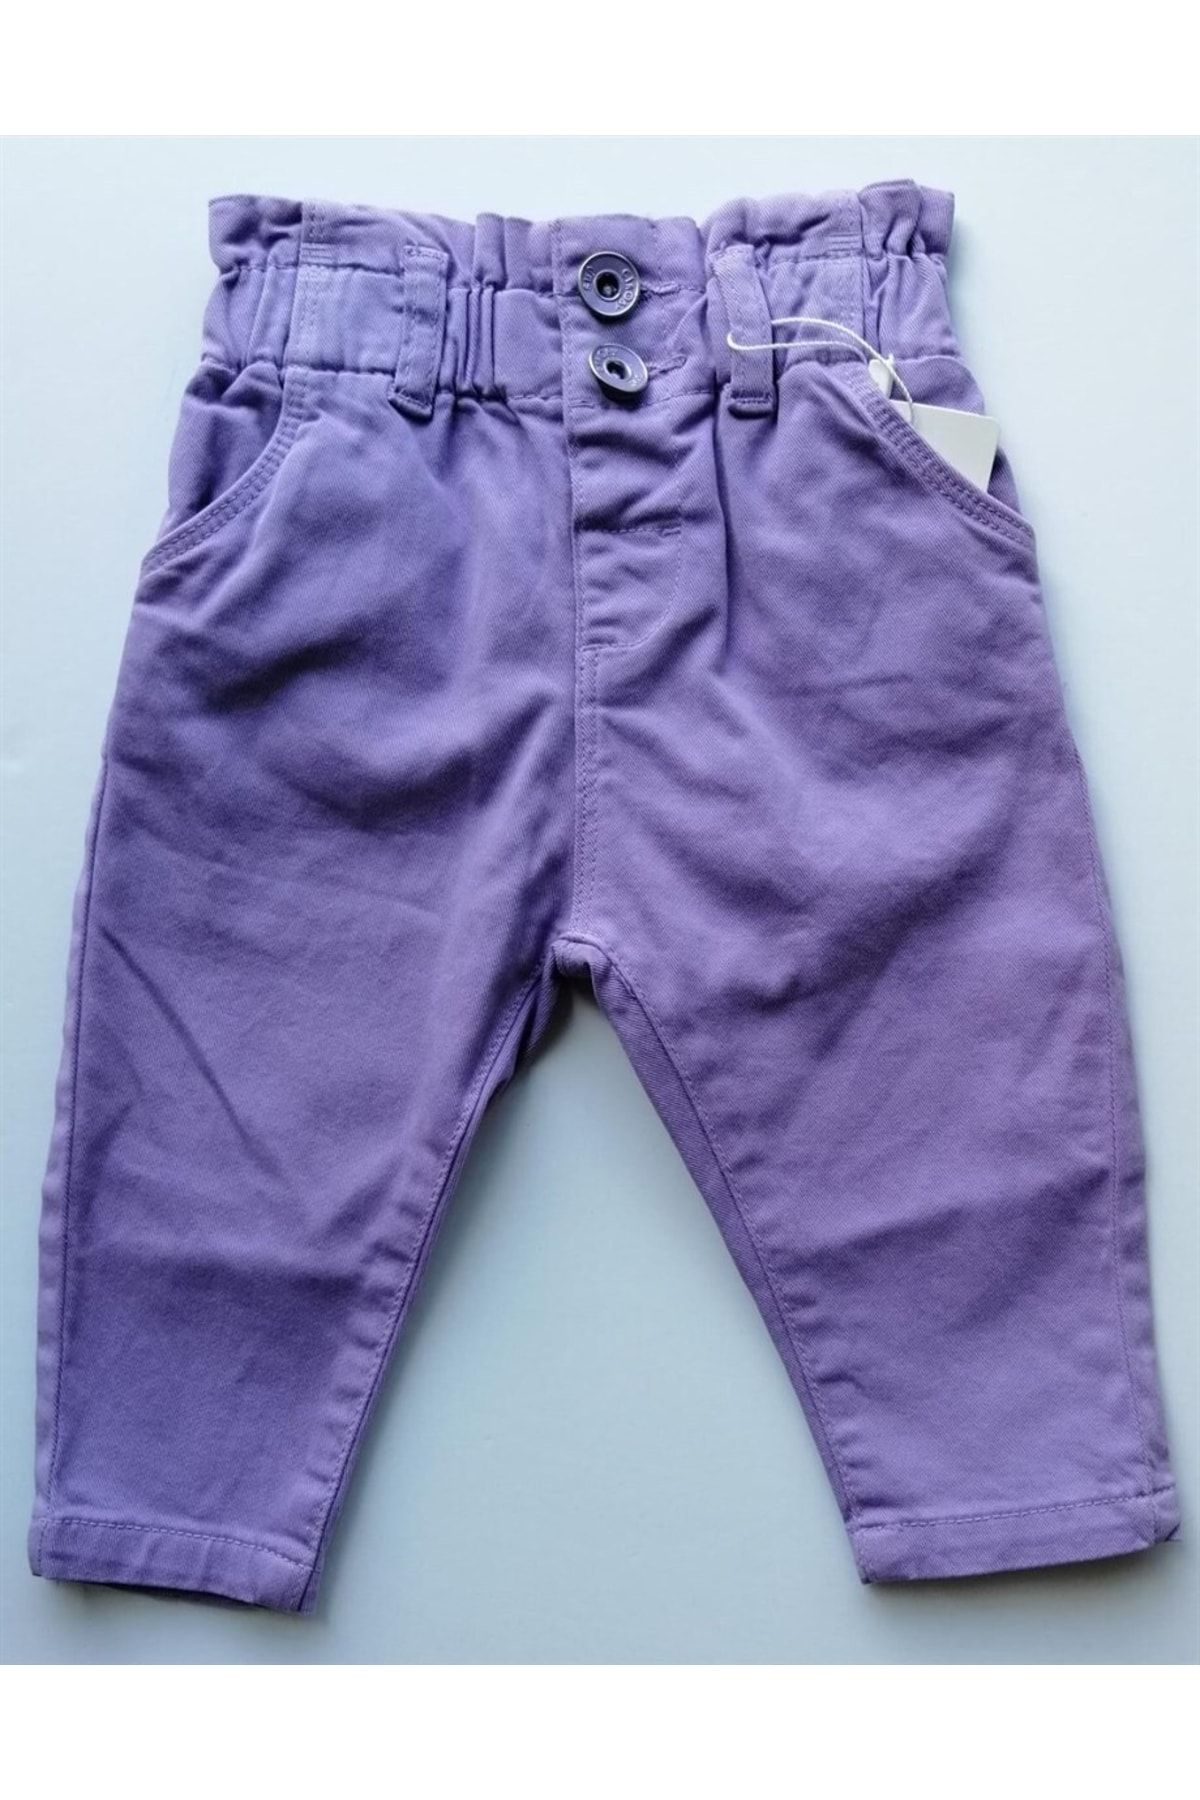 çikoby Kız Bebek Kız Çocuk Beli Lastikli Yüksel Bel Havuç Pantolon